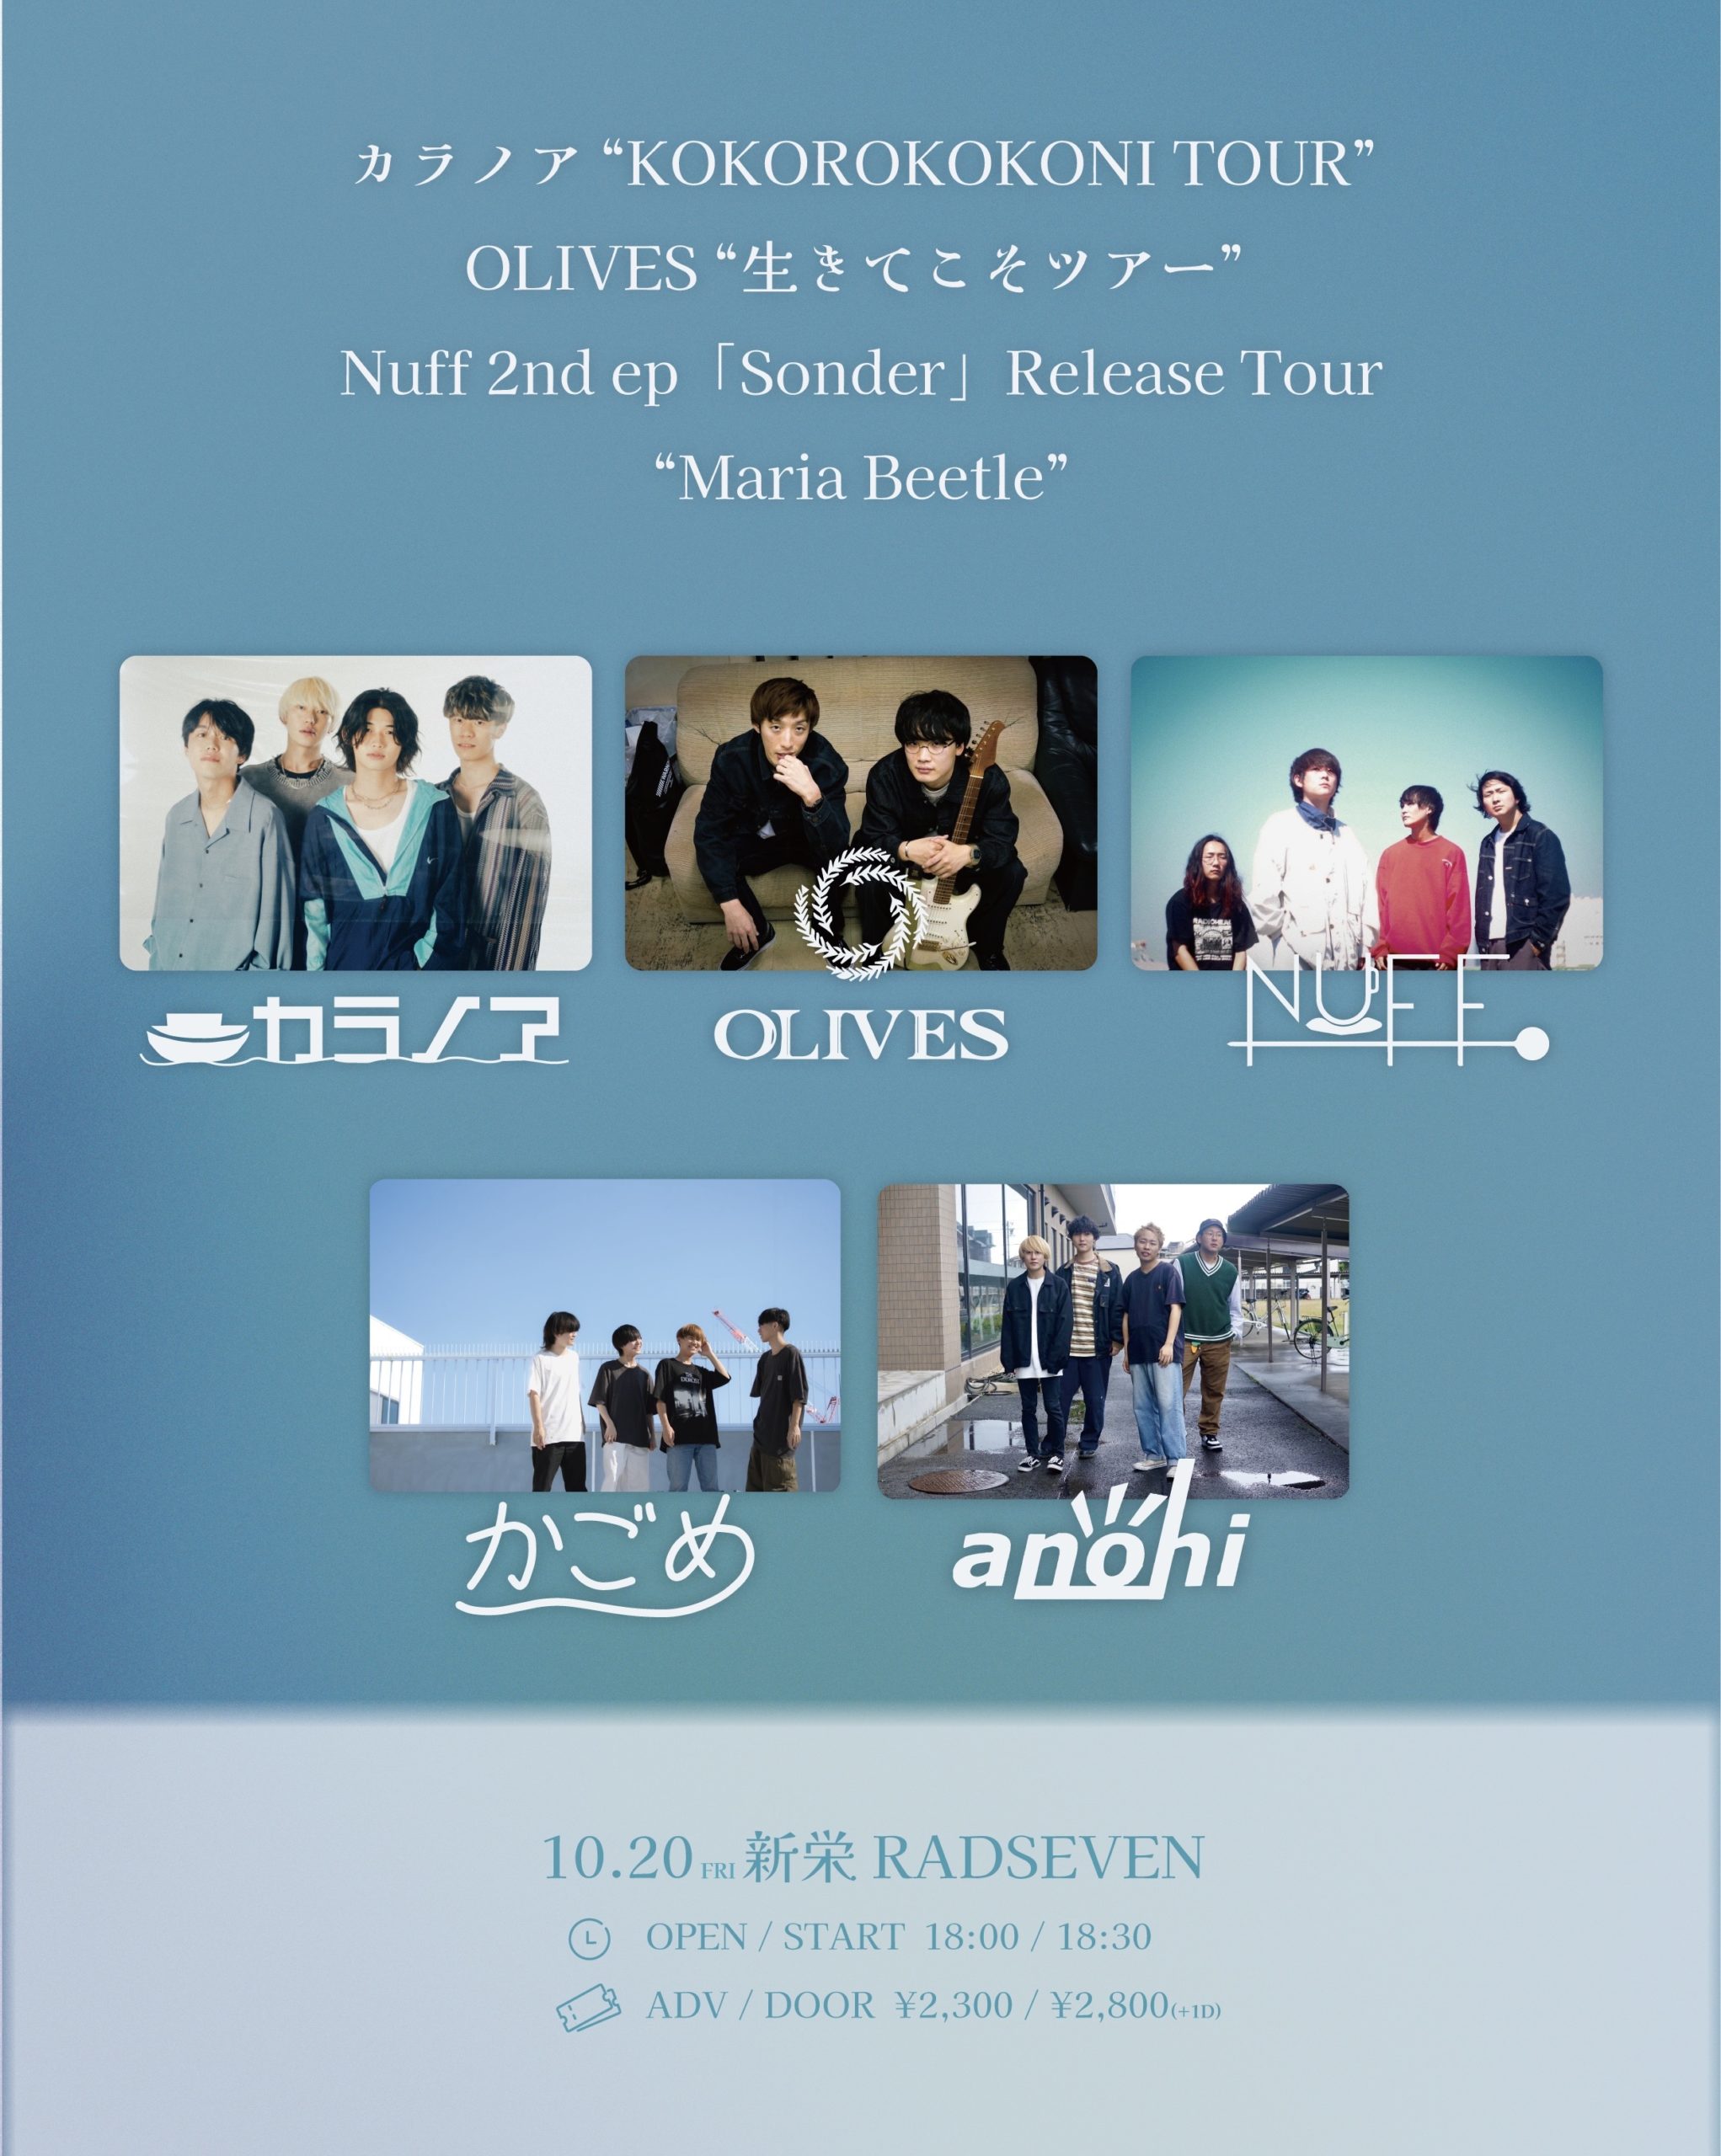 カラノア「KOKOROKOKONI TOUR」 OLIVES 生きてこそツアー  Nuff 2nd ep「Sonder」release tour Maria Beetle